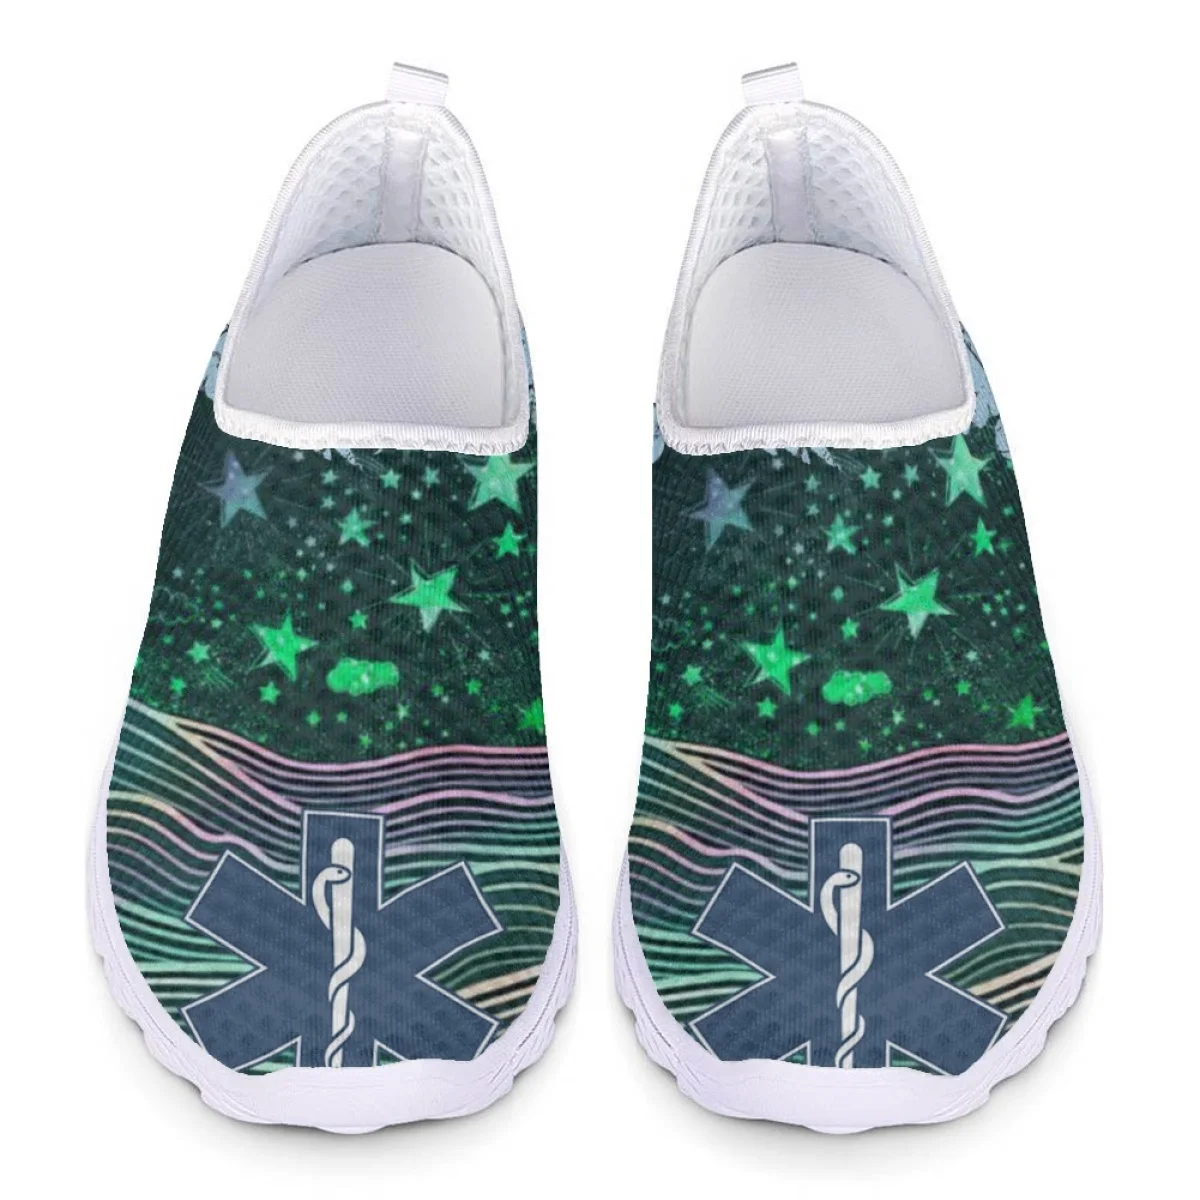 INSTANTARTS çift yılan kamışı baskılı yıldız bahar ve yaz örgü nefes Sneakers ışık düz yürüyüş ayakkabısı ayakkabı kadınlar için